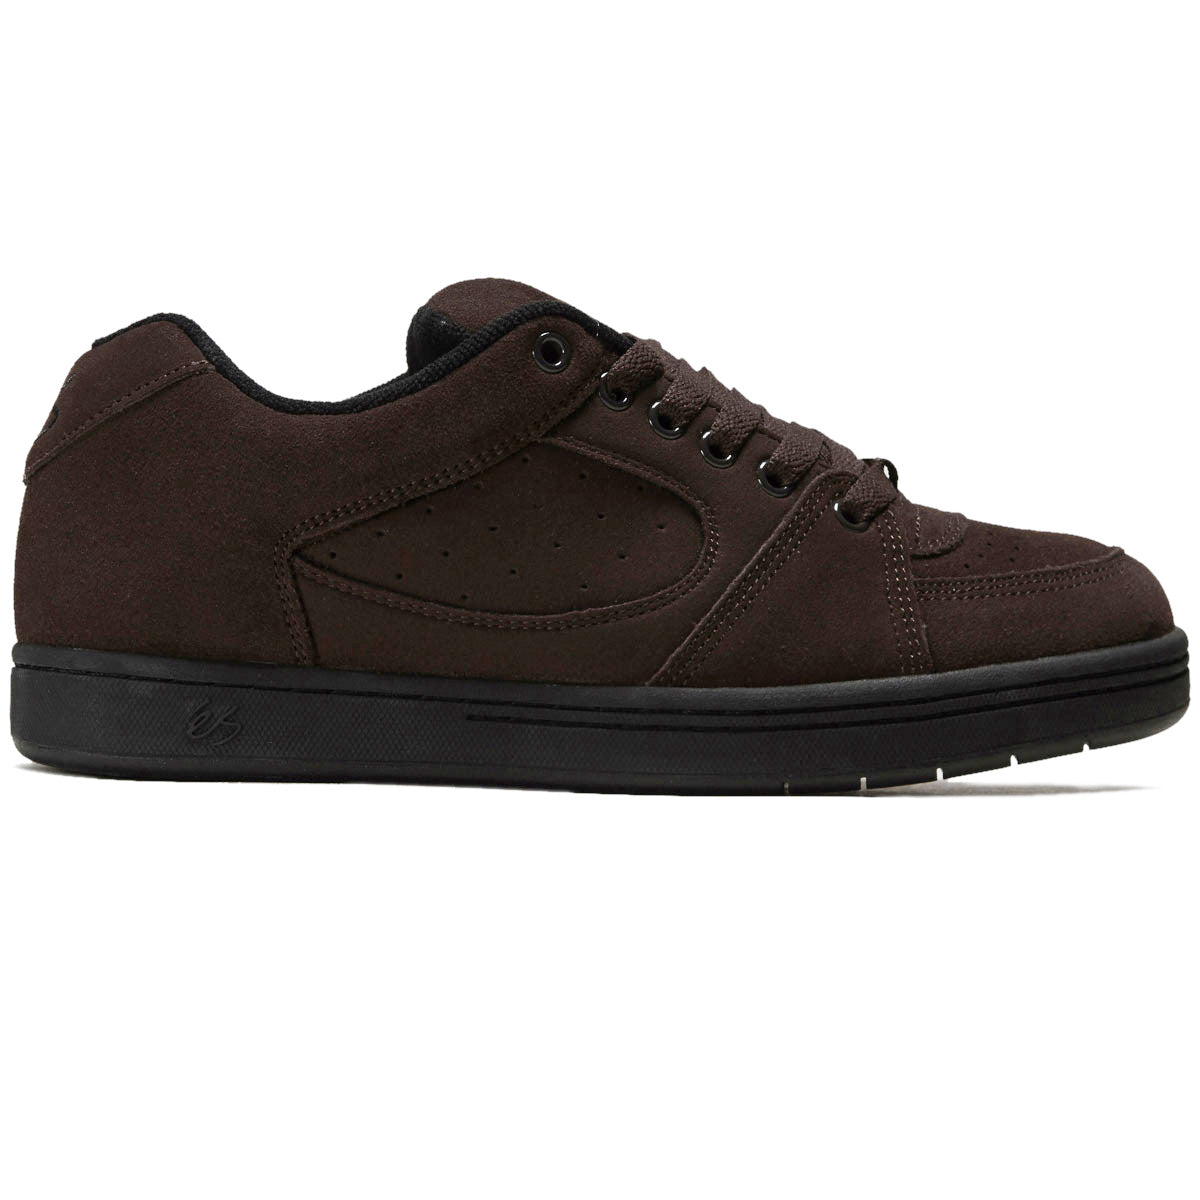 eS Accel OG Shoes - Brown/Black image 1